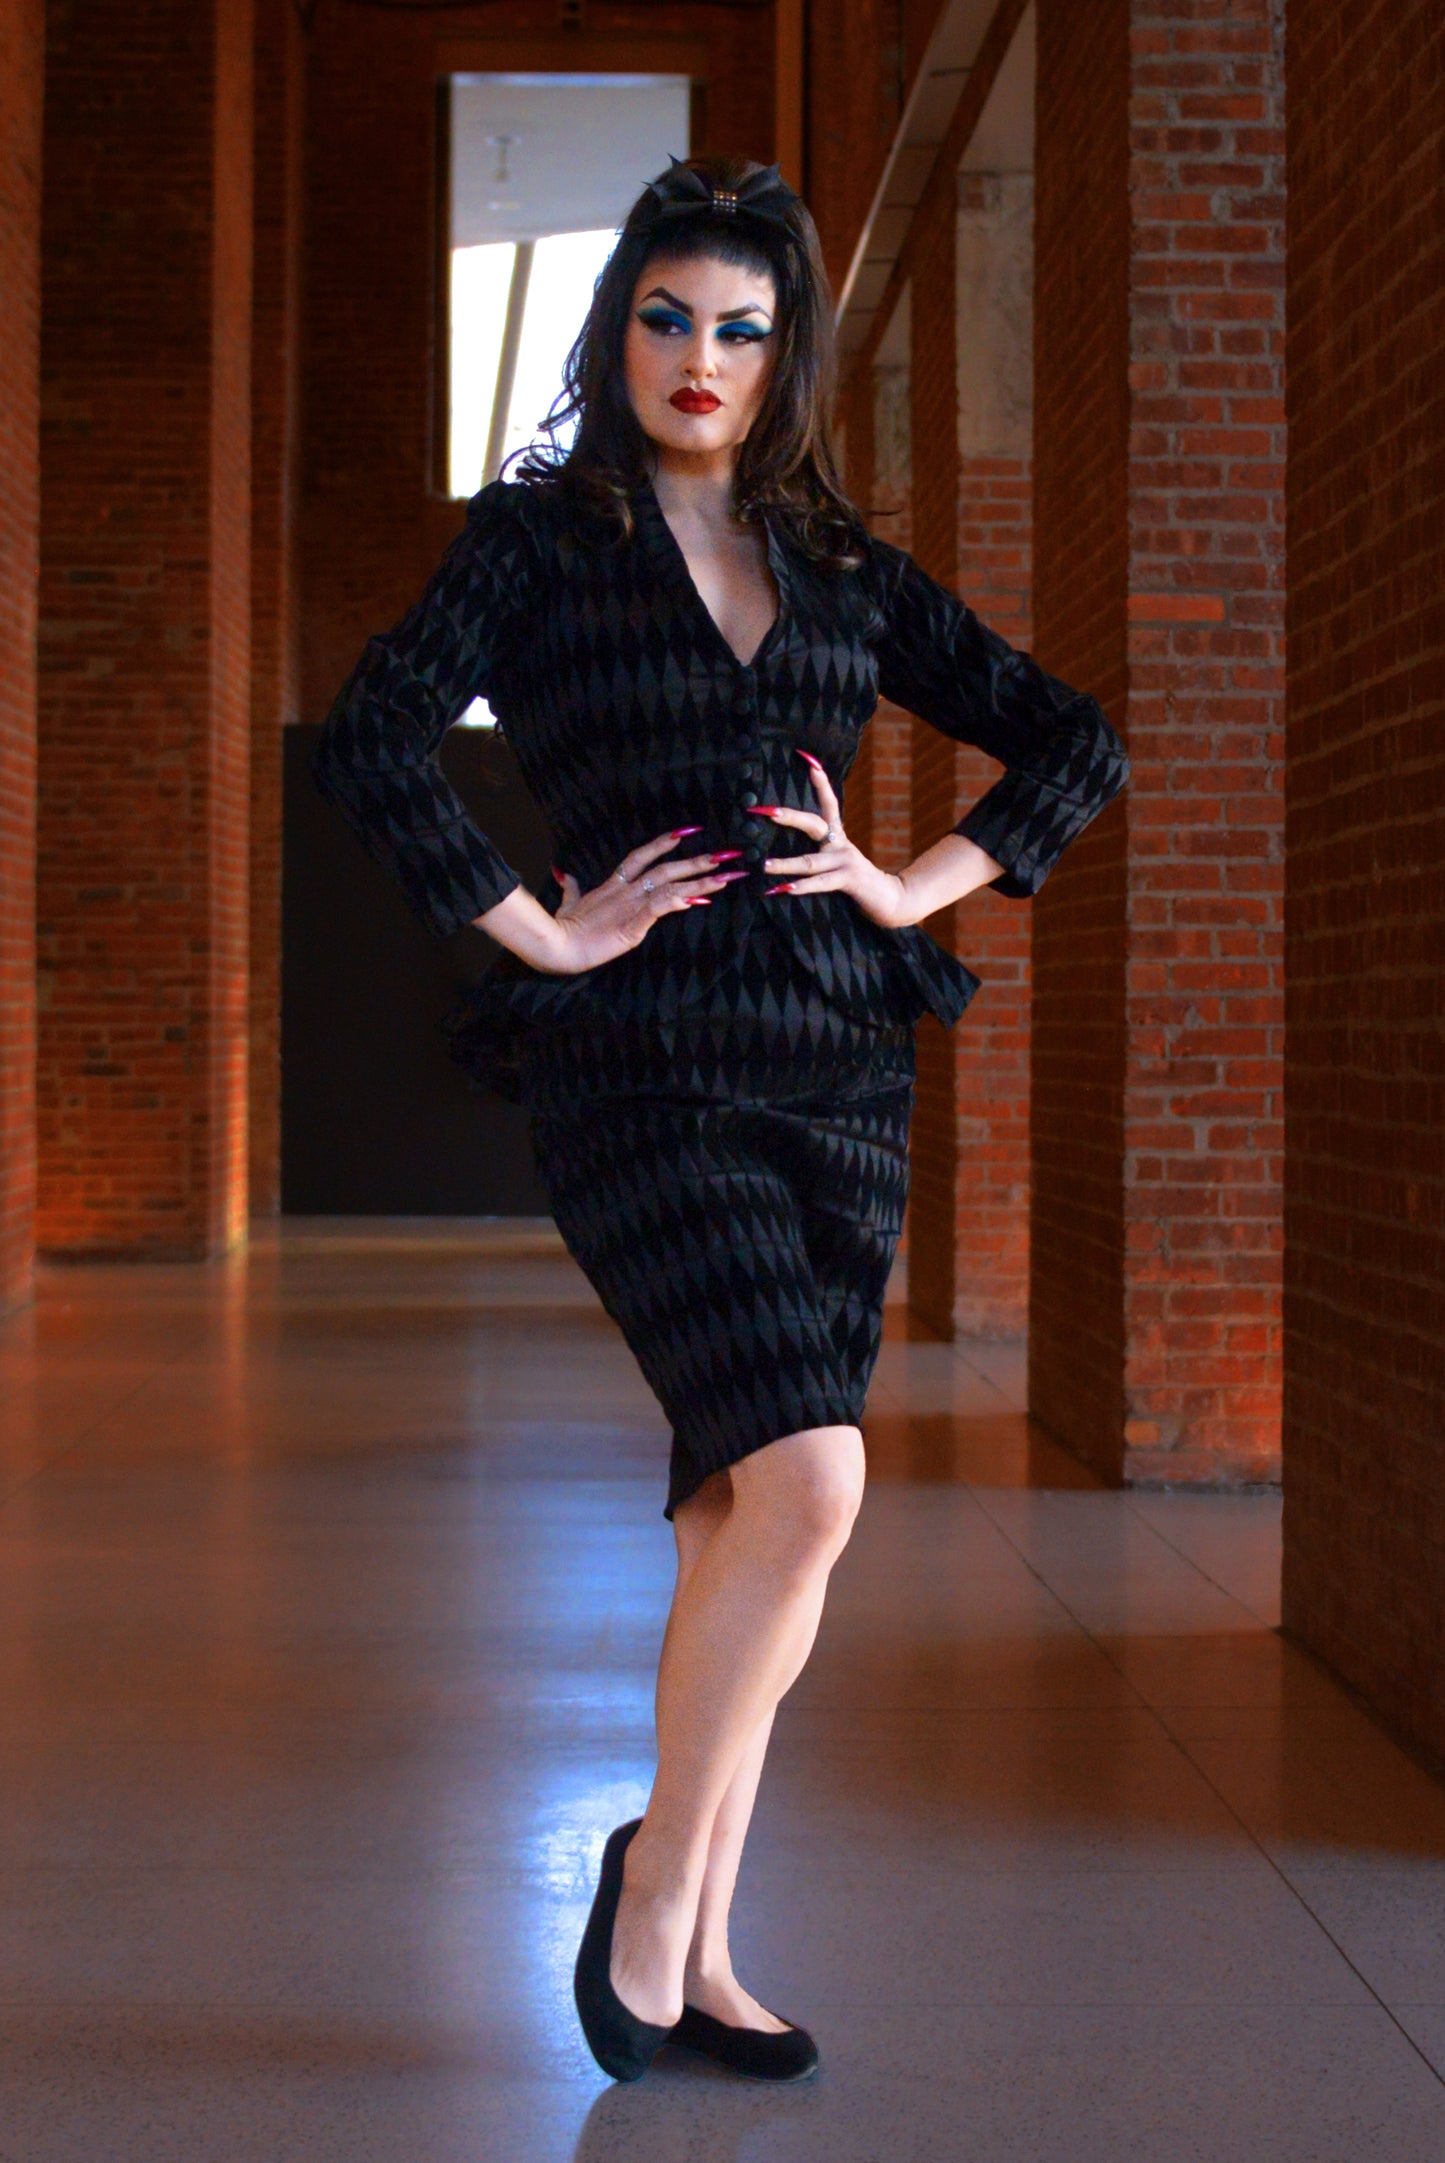 Laura Byrnes California Morgana Jacket in Black Flocked Harlequin